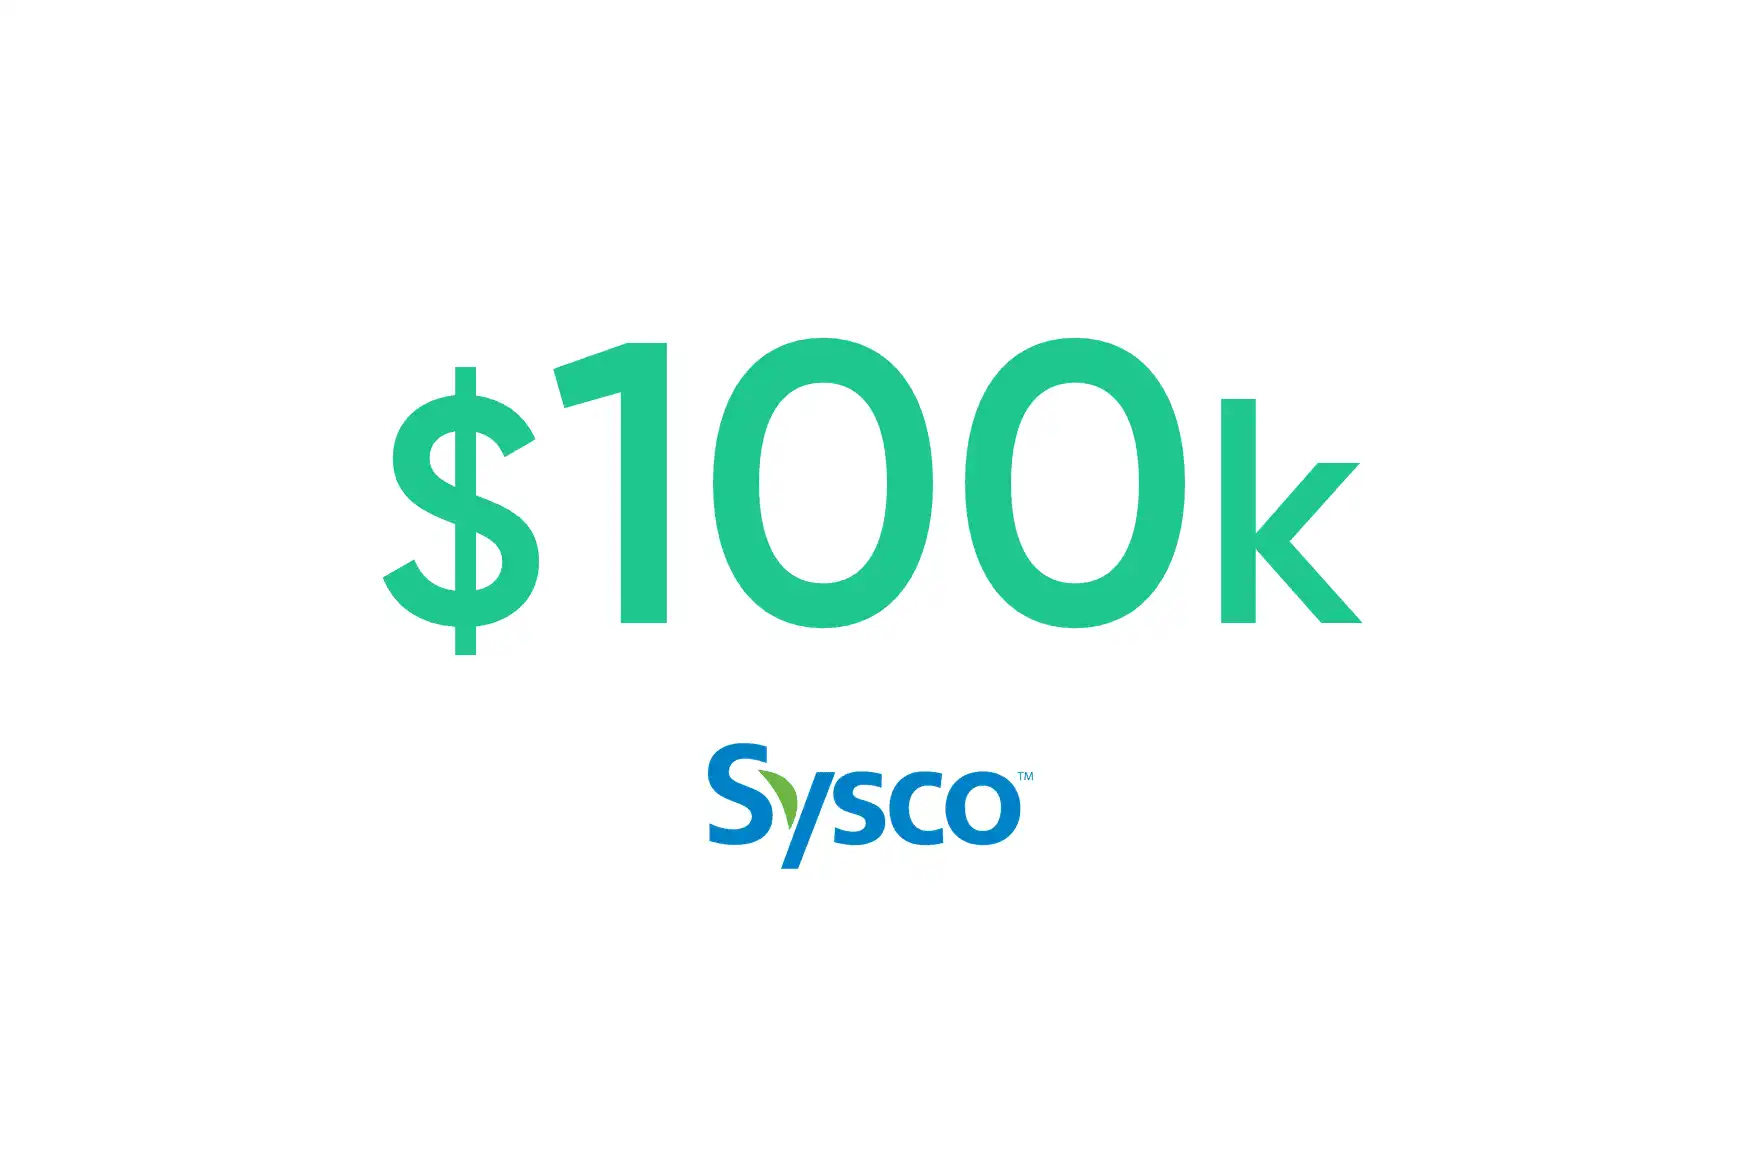 Sysco: $100K annual savings through automation